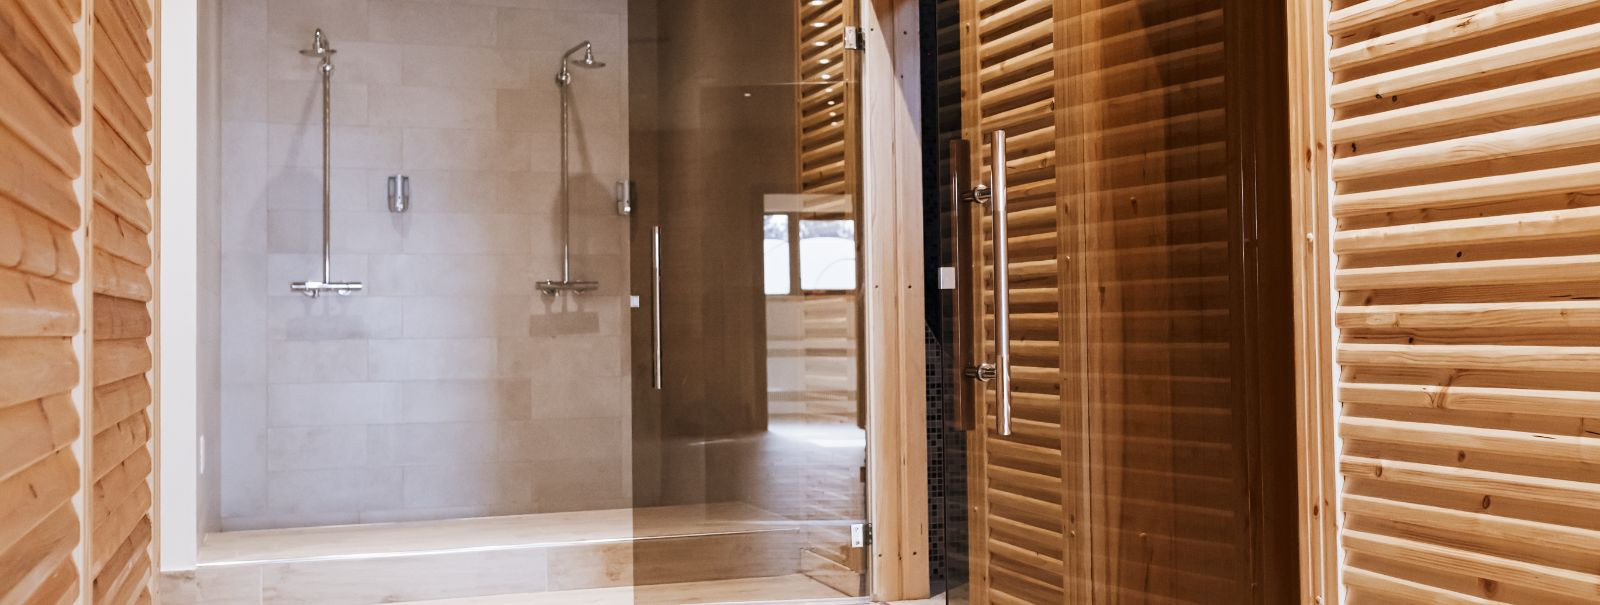 Kujutage ette sisenemist sauna, kus piirid teie ja rahuliku maastiku vahel on hägustunud tänu kohandatud klaasseinte puhtale elegantsile. Klaasi esteetiline vee